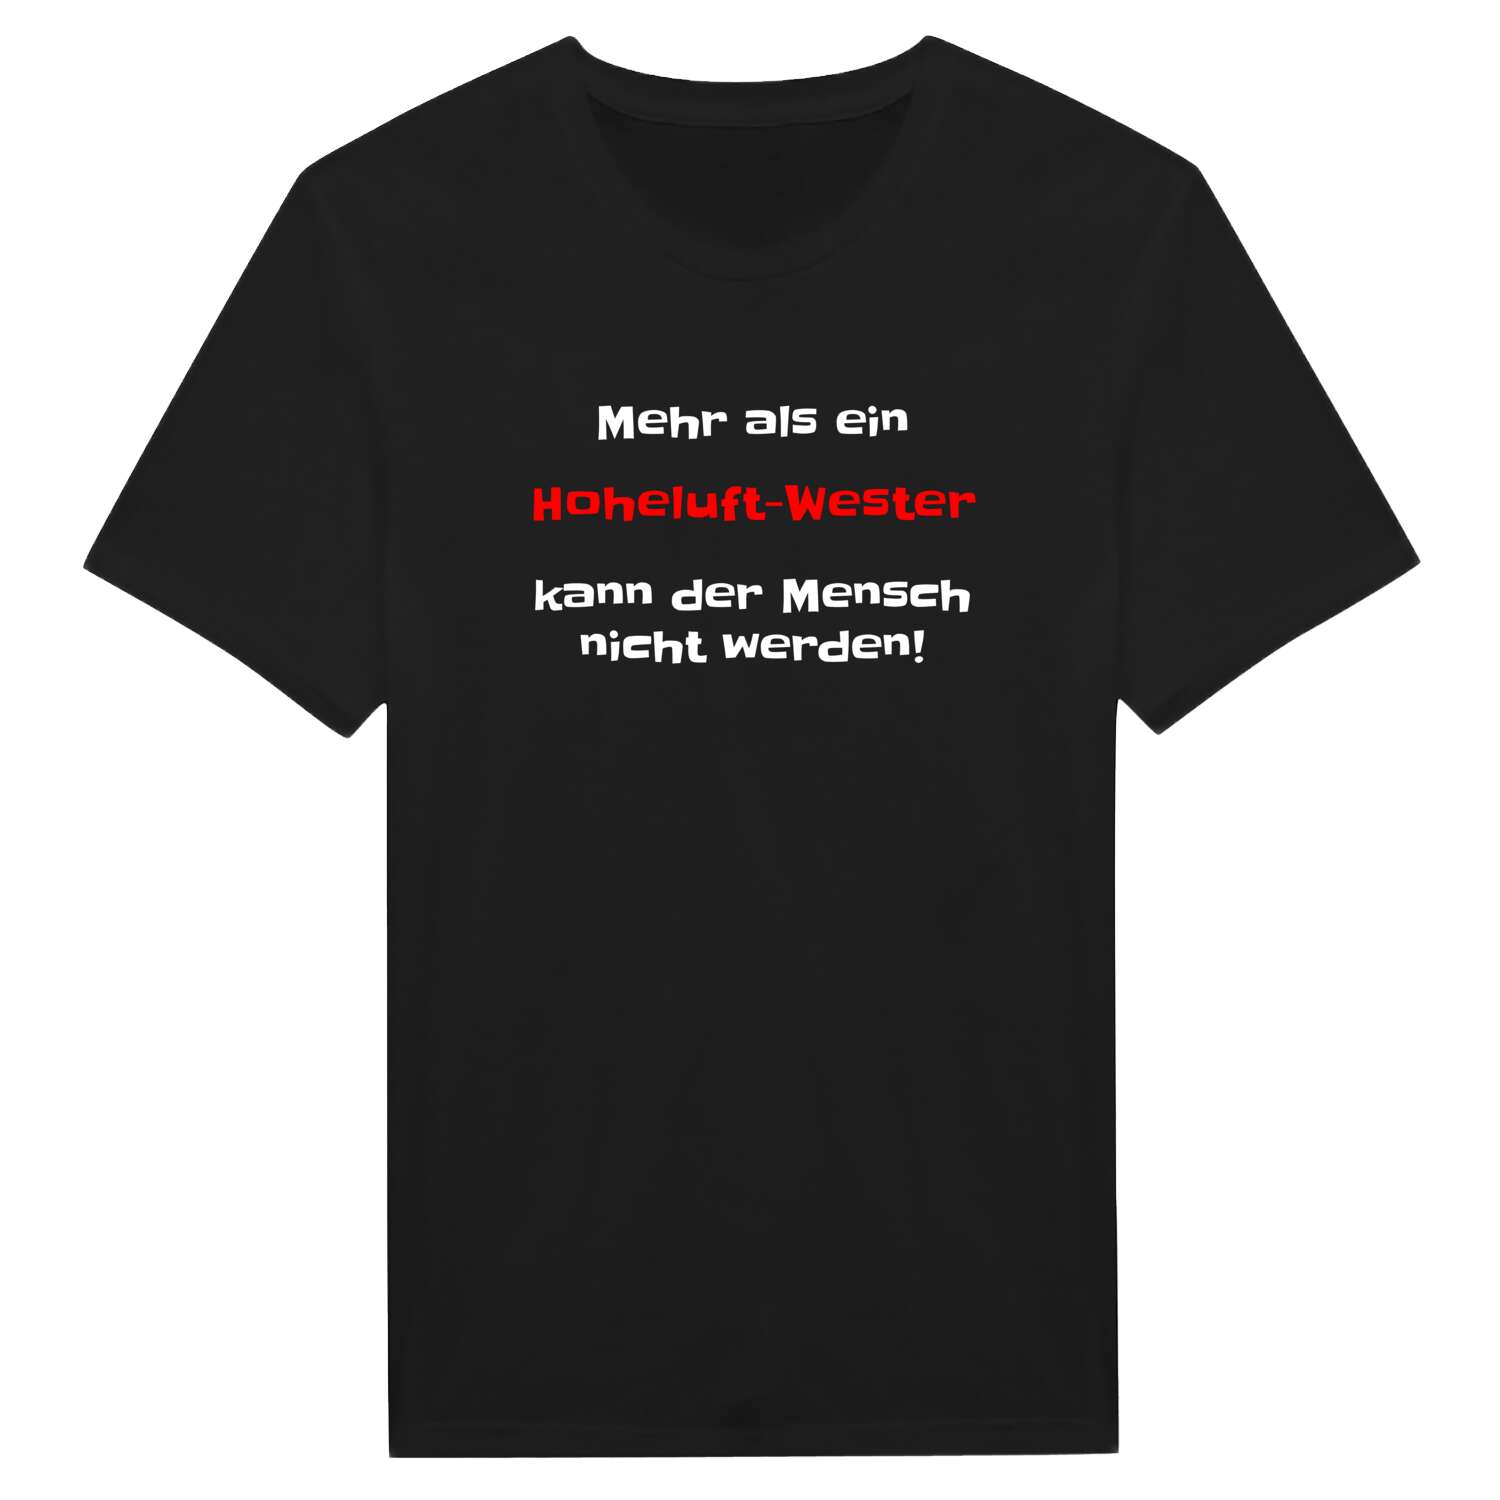 Hoheluft-West T-Shirt »Mehr als ein«